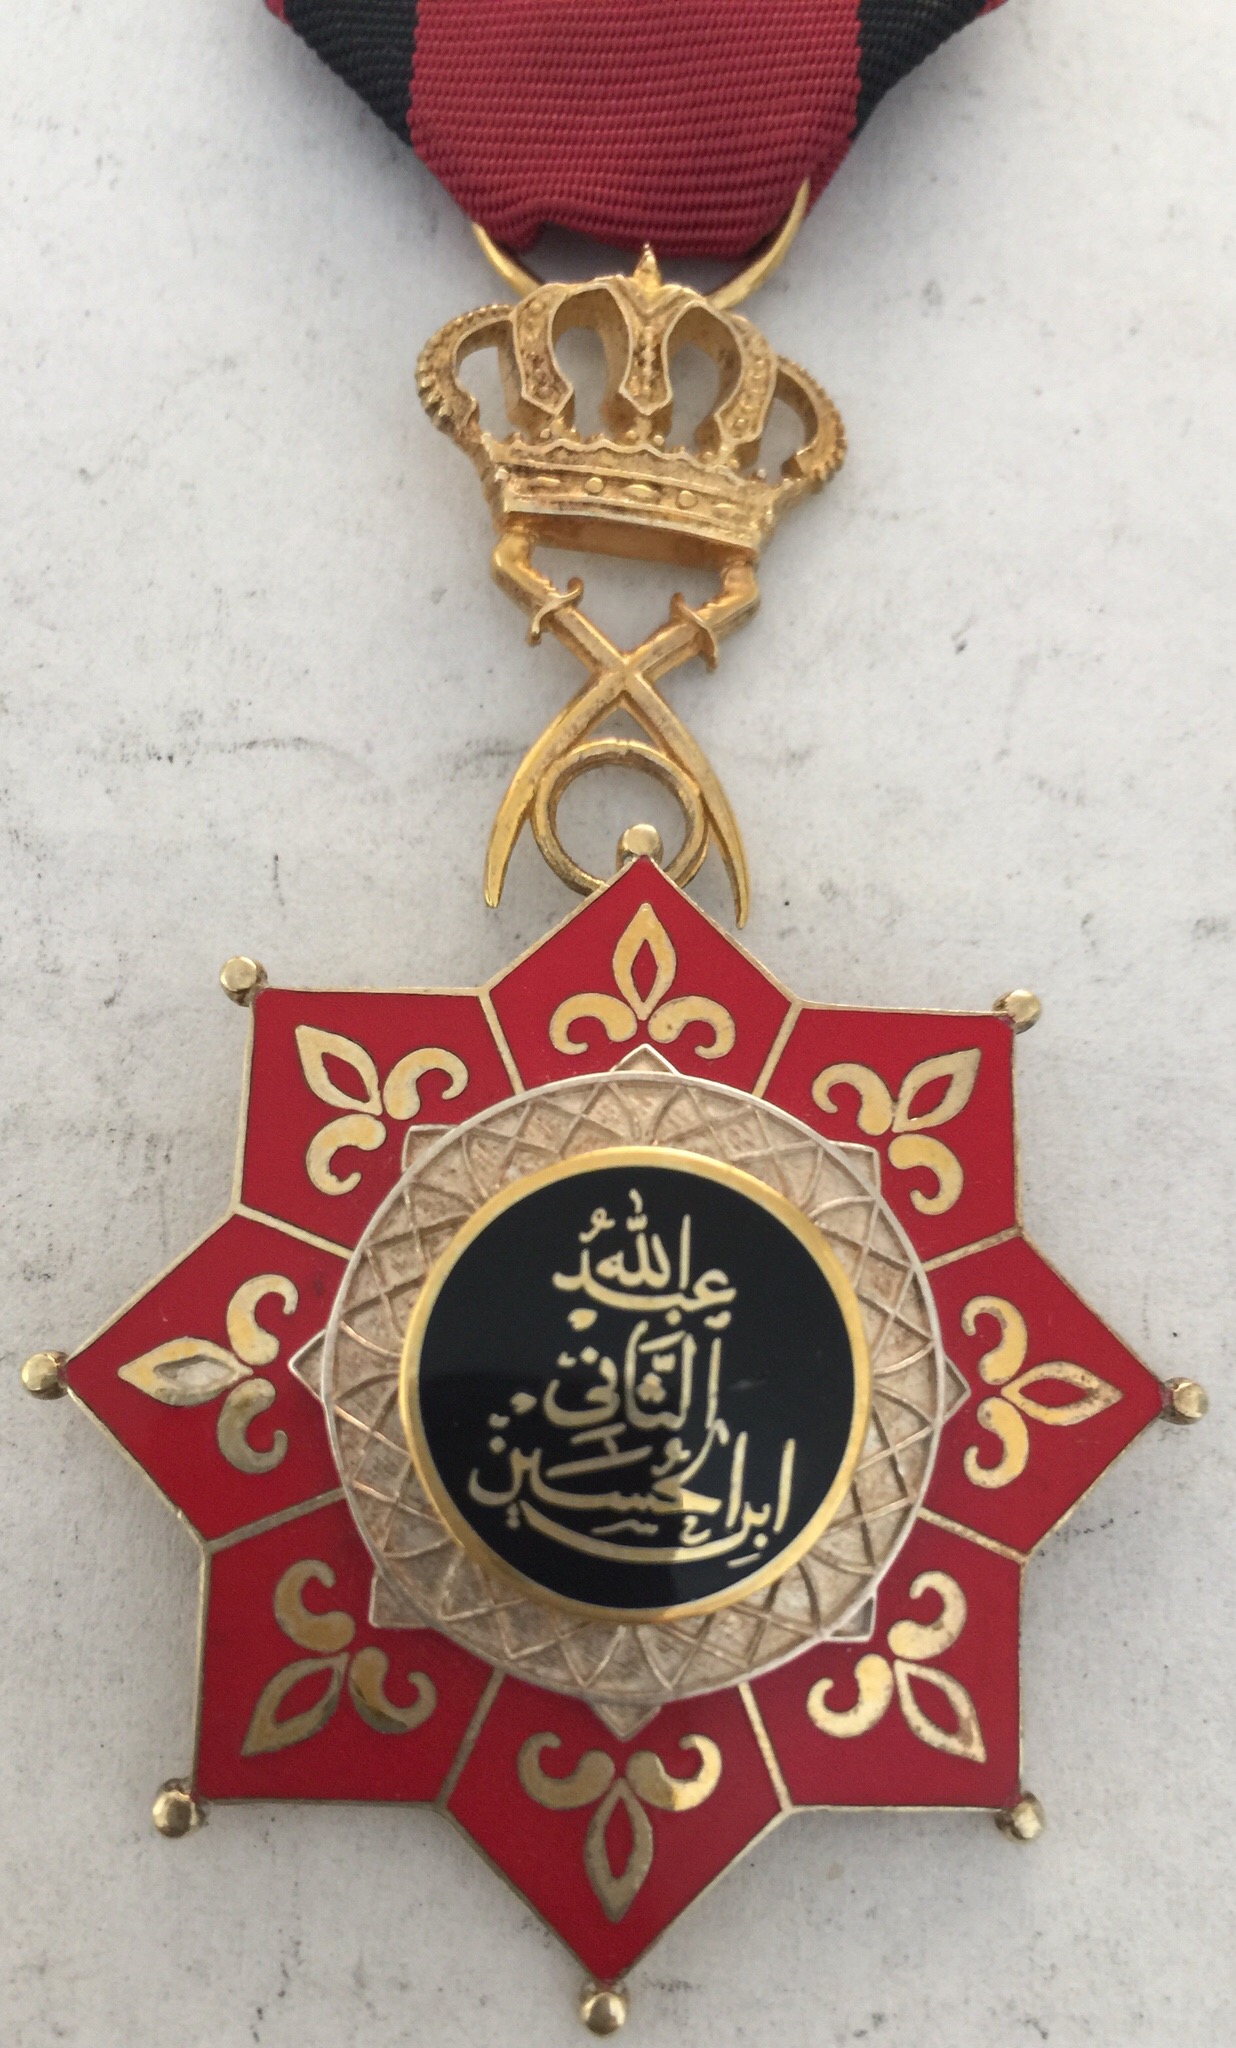 Jordan Order of King Abdullah II Breast Badge Civil Military Medal Nichan (Rare).